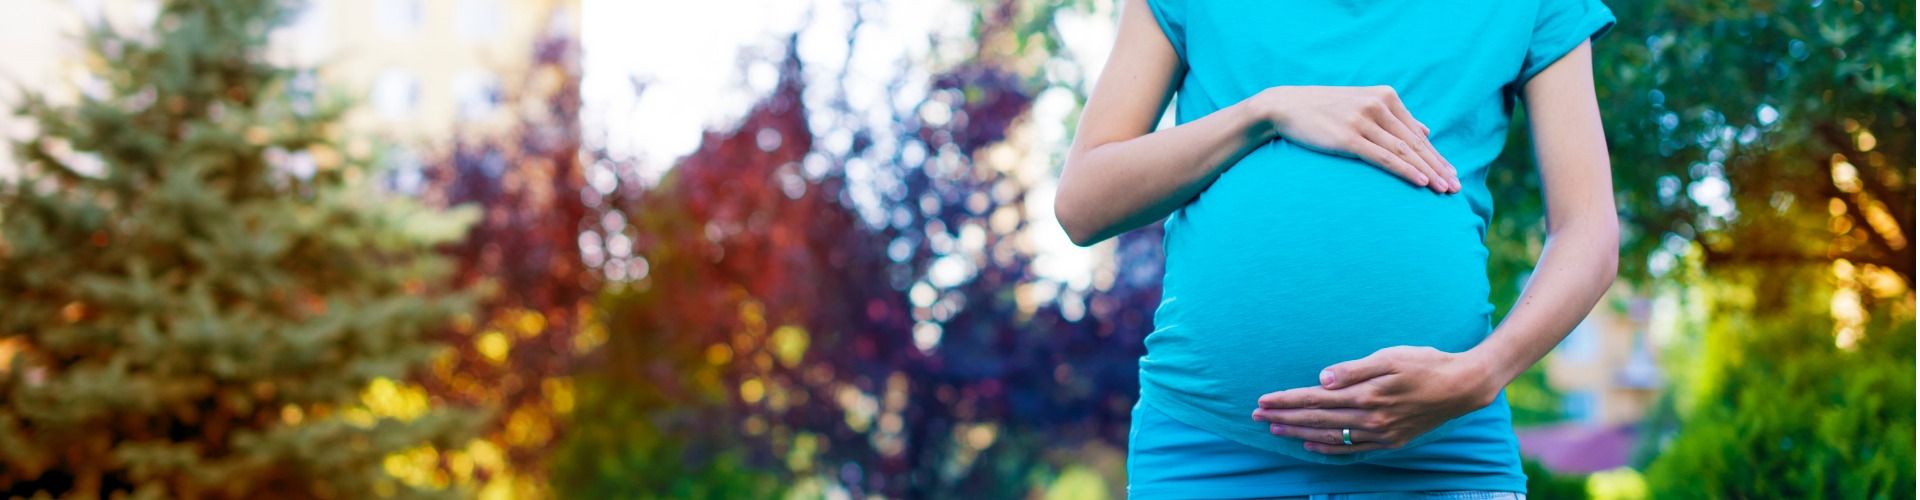 Autogurt für Schwangere: Optimale Absicherung auch in der Schwangerschaft!